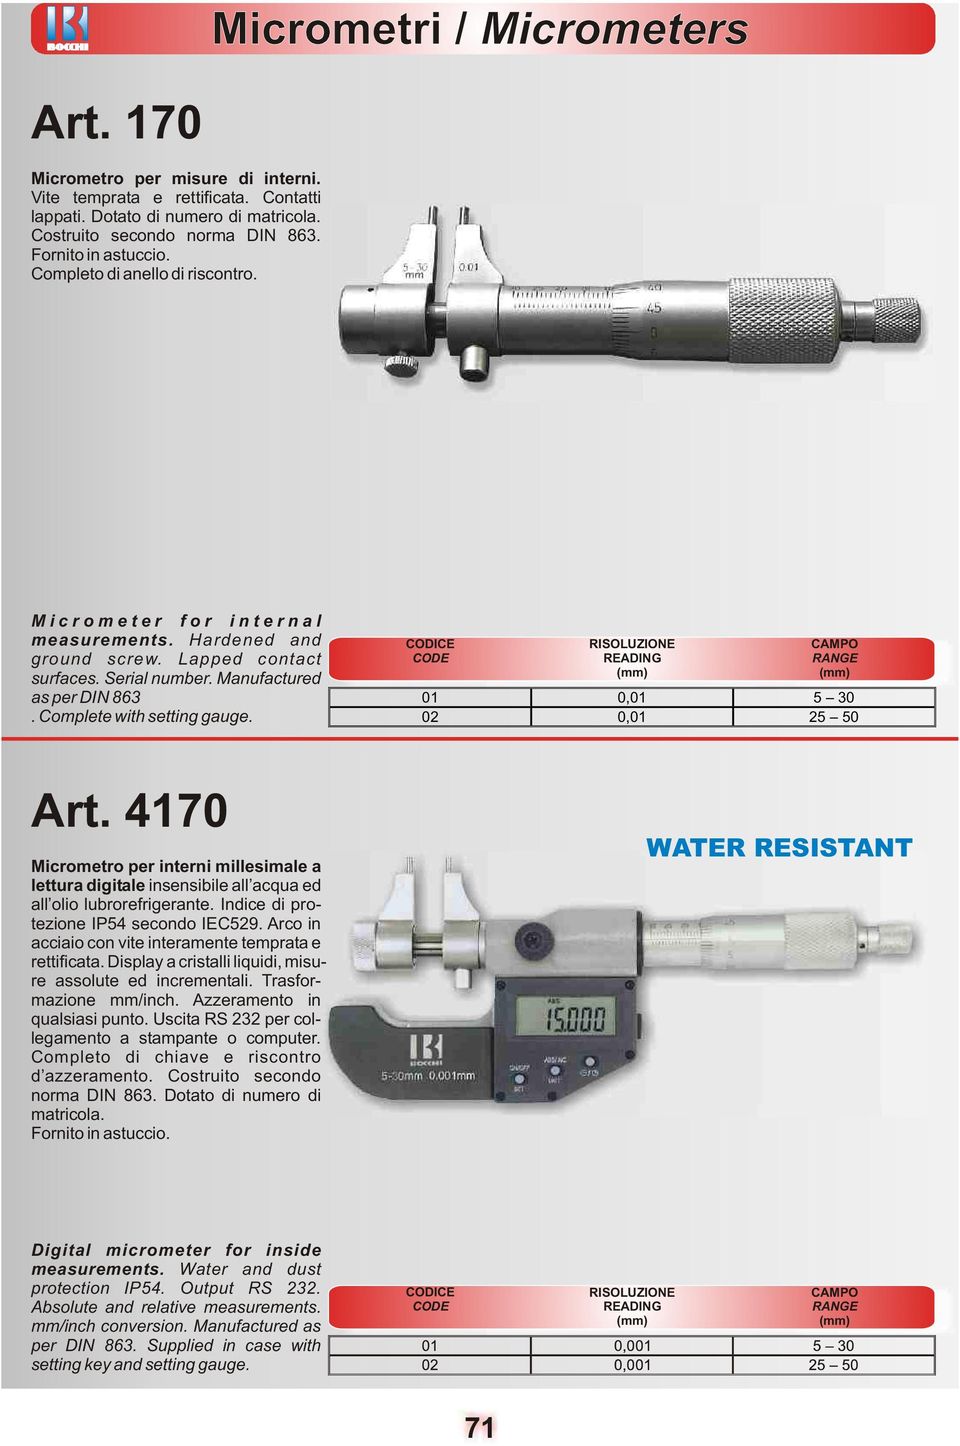 4170 Micrometro per interni millesimale a lettura digitale insensibile all acqua ed all olio lubrorefrigerante. Indice di protezione IP54 secondo IEC529.